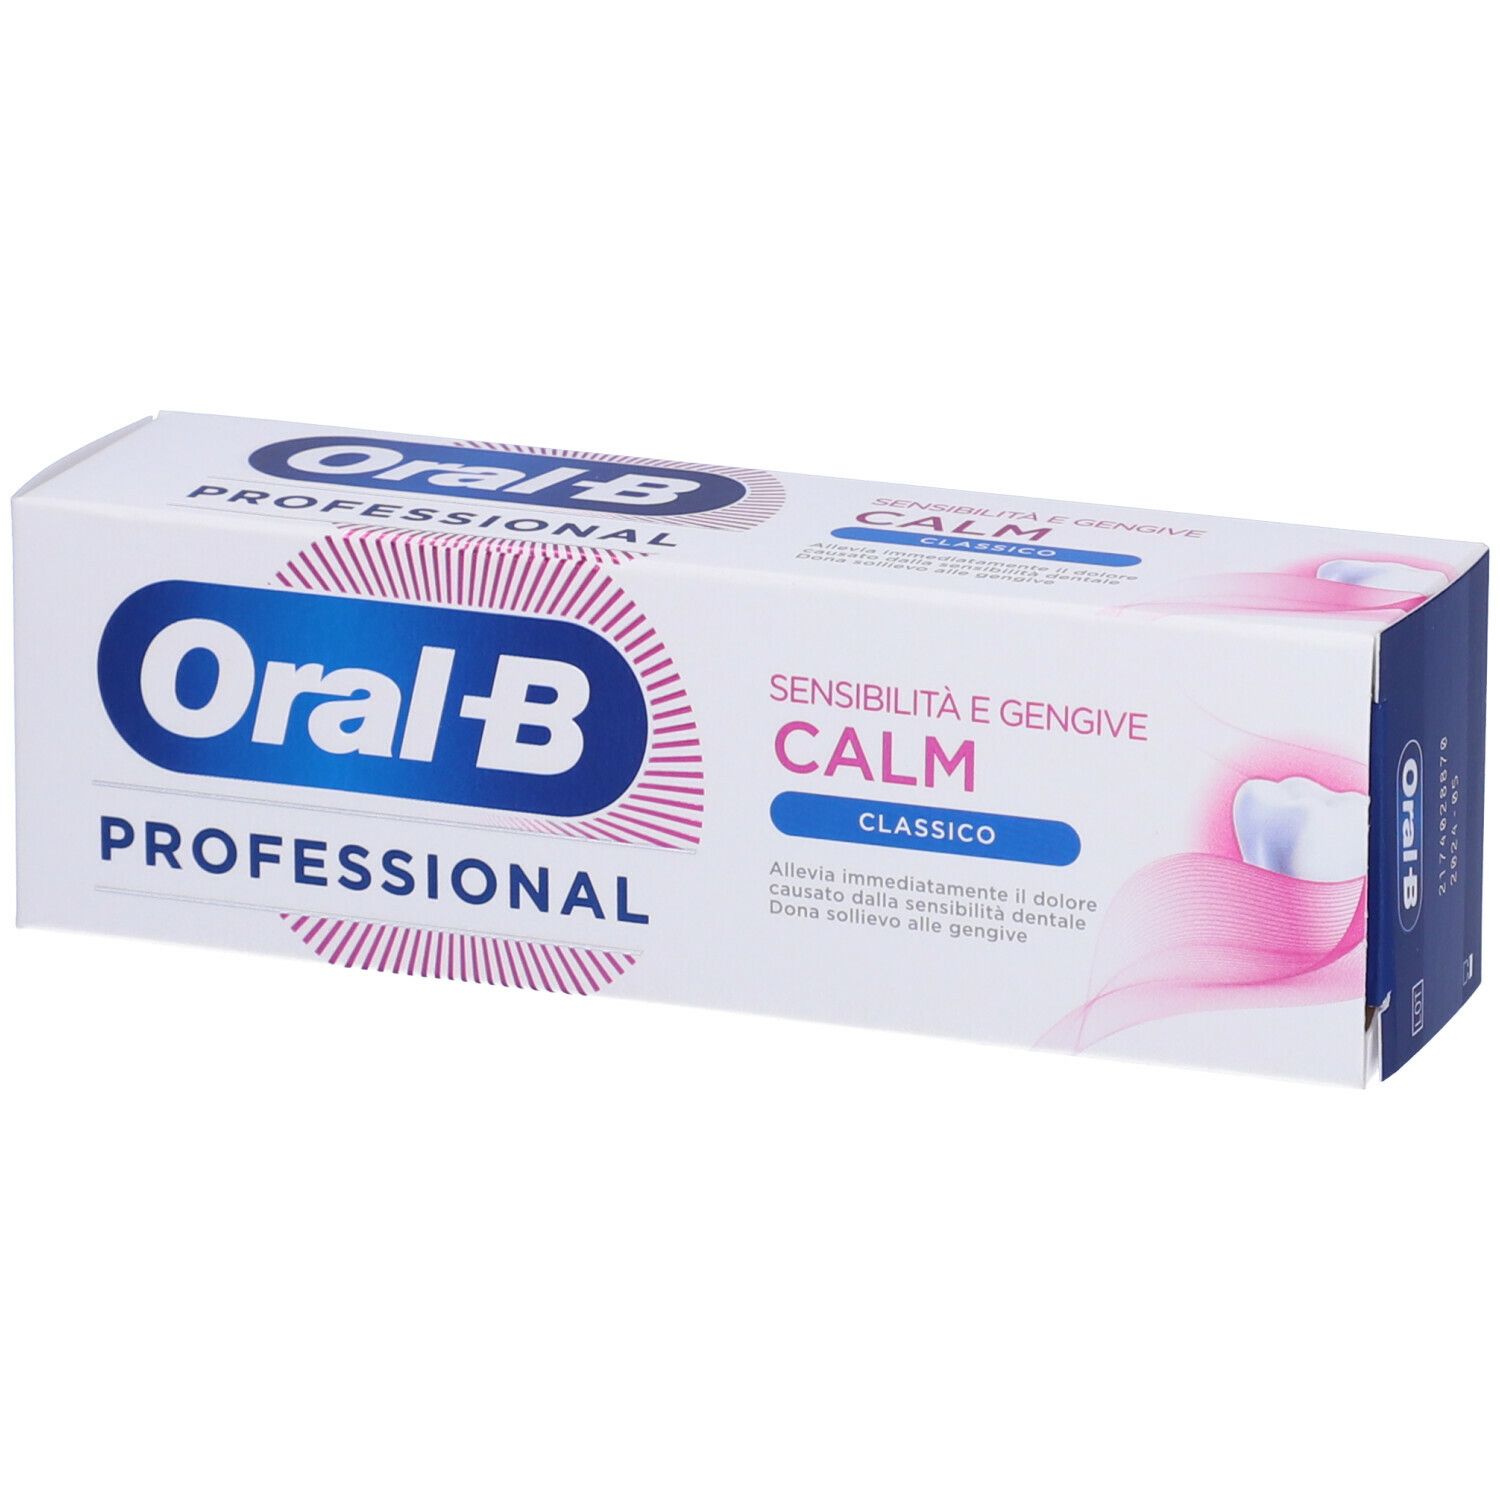 Oral-B Professional Dentifricio Sensibilità e Gengive Calm Classico